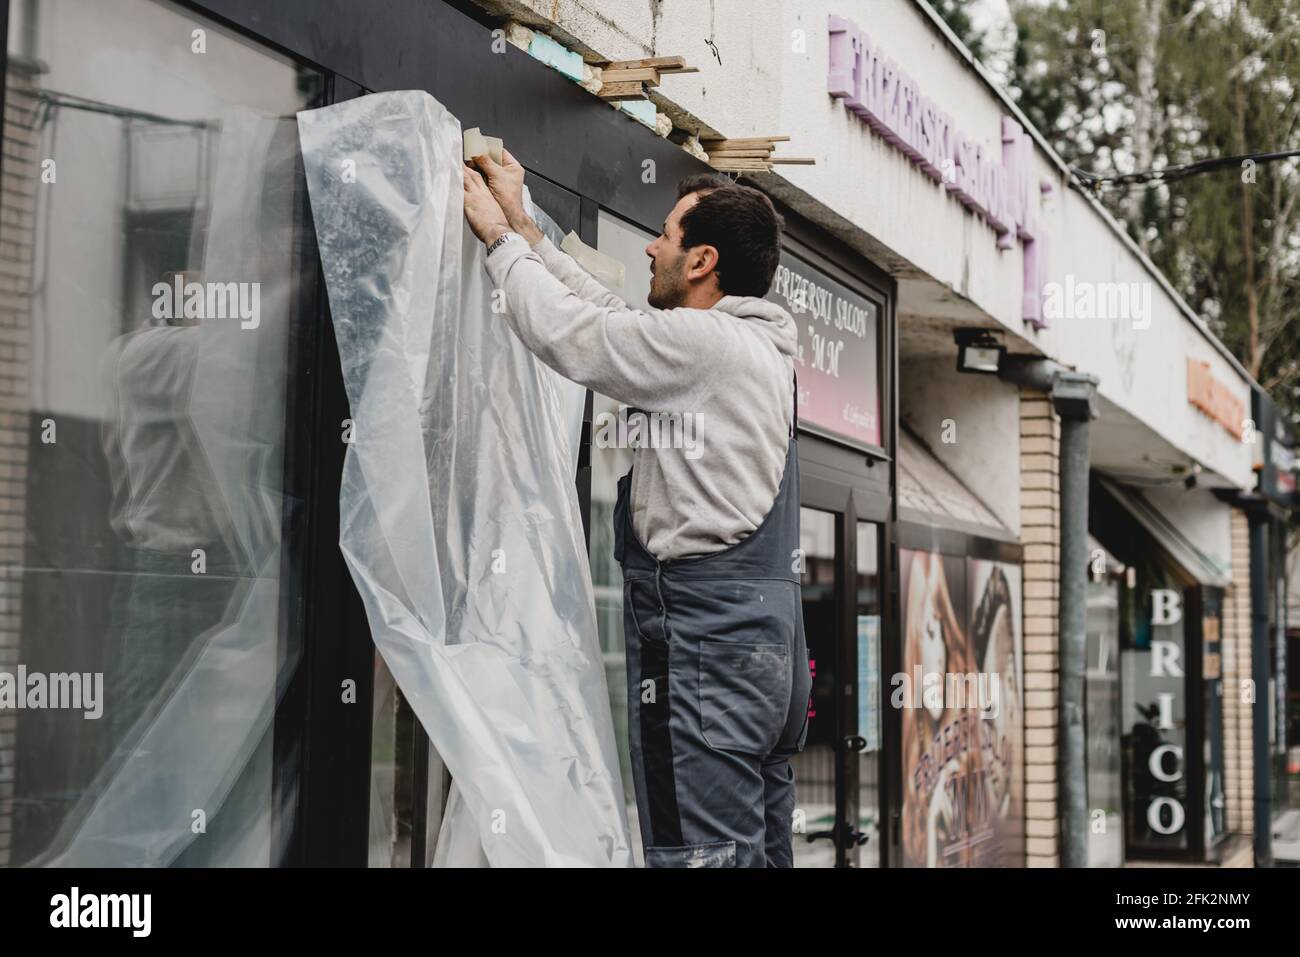 Sarajevo, Bosnie-Herzégovine - 26.04.2021: Réouverture du magasin, employé renouvelant l'avant du magasin après le confinement de Covid 19 Banque D'Images